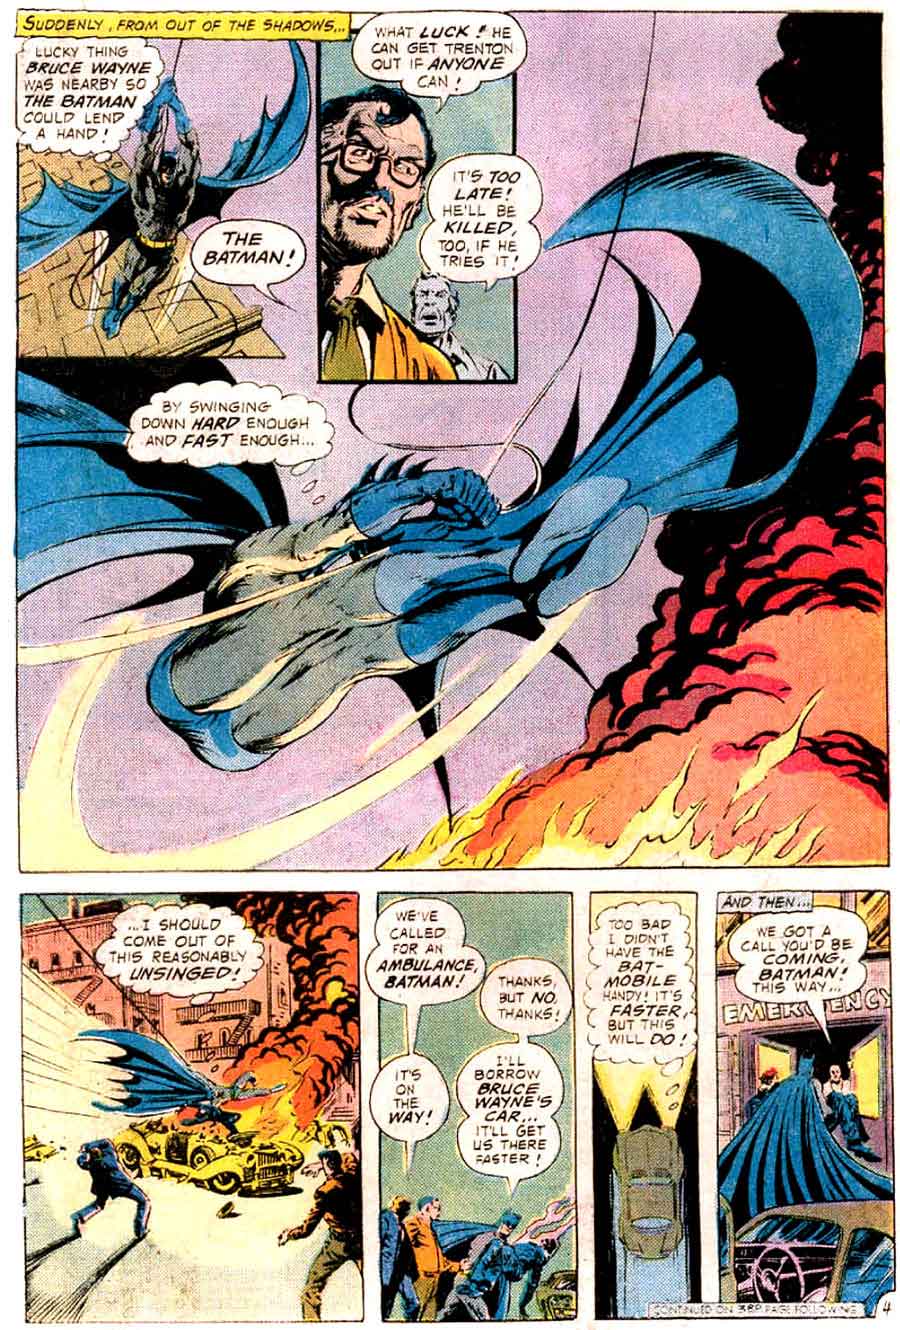 Batman v1 #265 dc comic book page art by Bernie Wrightson